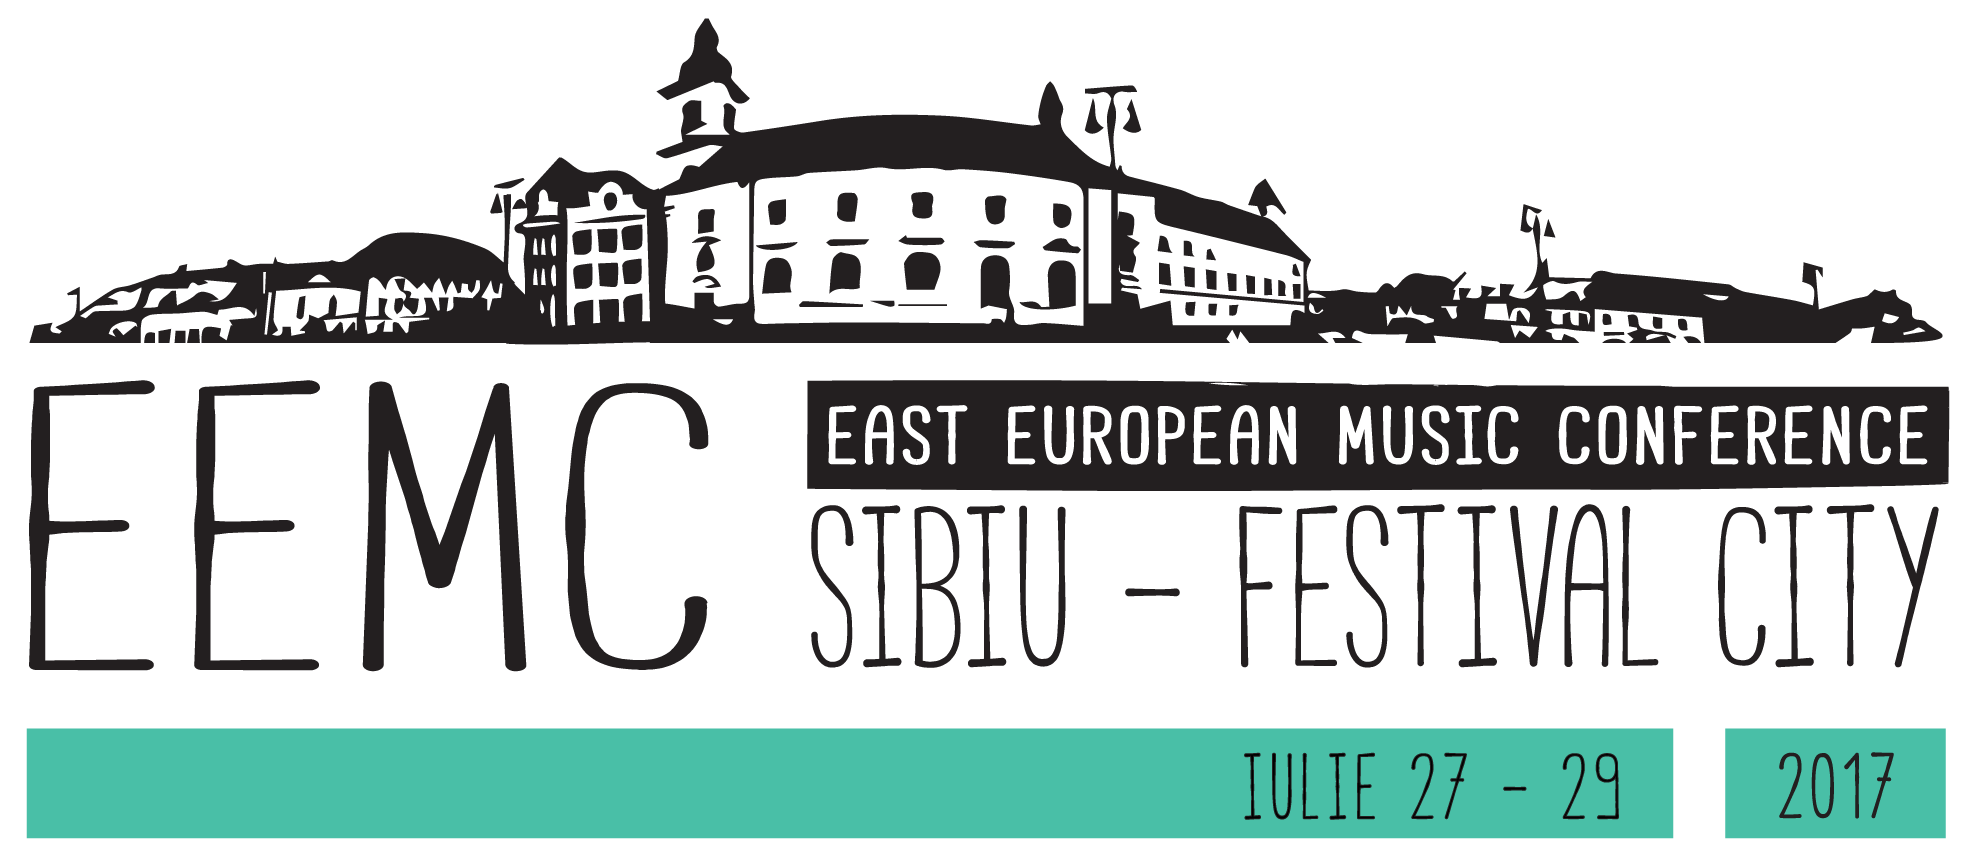 Artiștii care vor cariere internaționale îi întâlnesc la Sibiu pe directorii și agenții marilor festivaluri europene